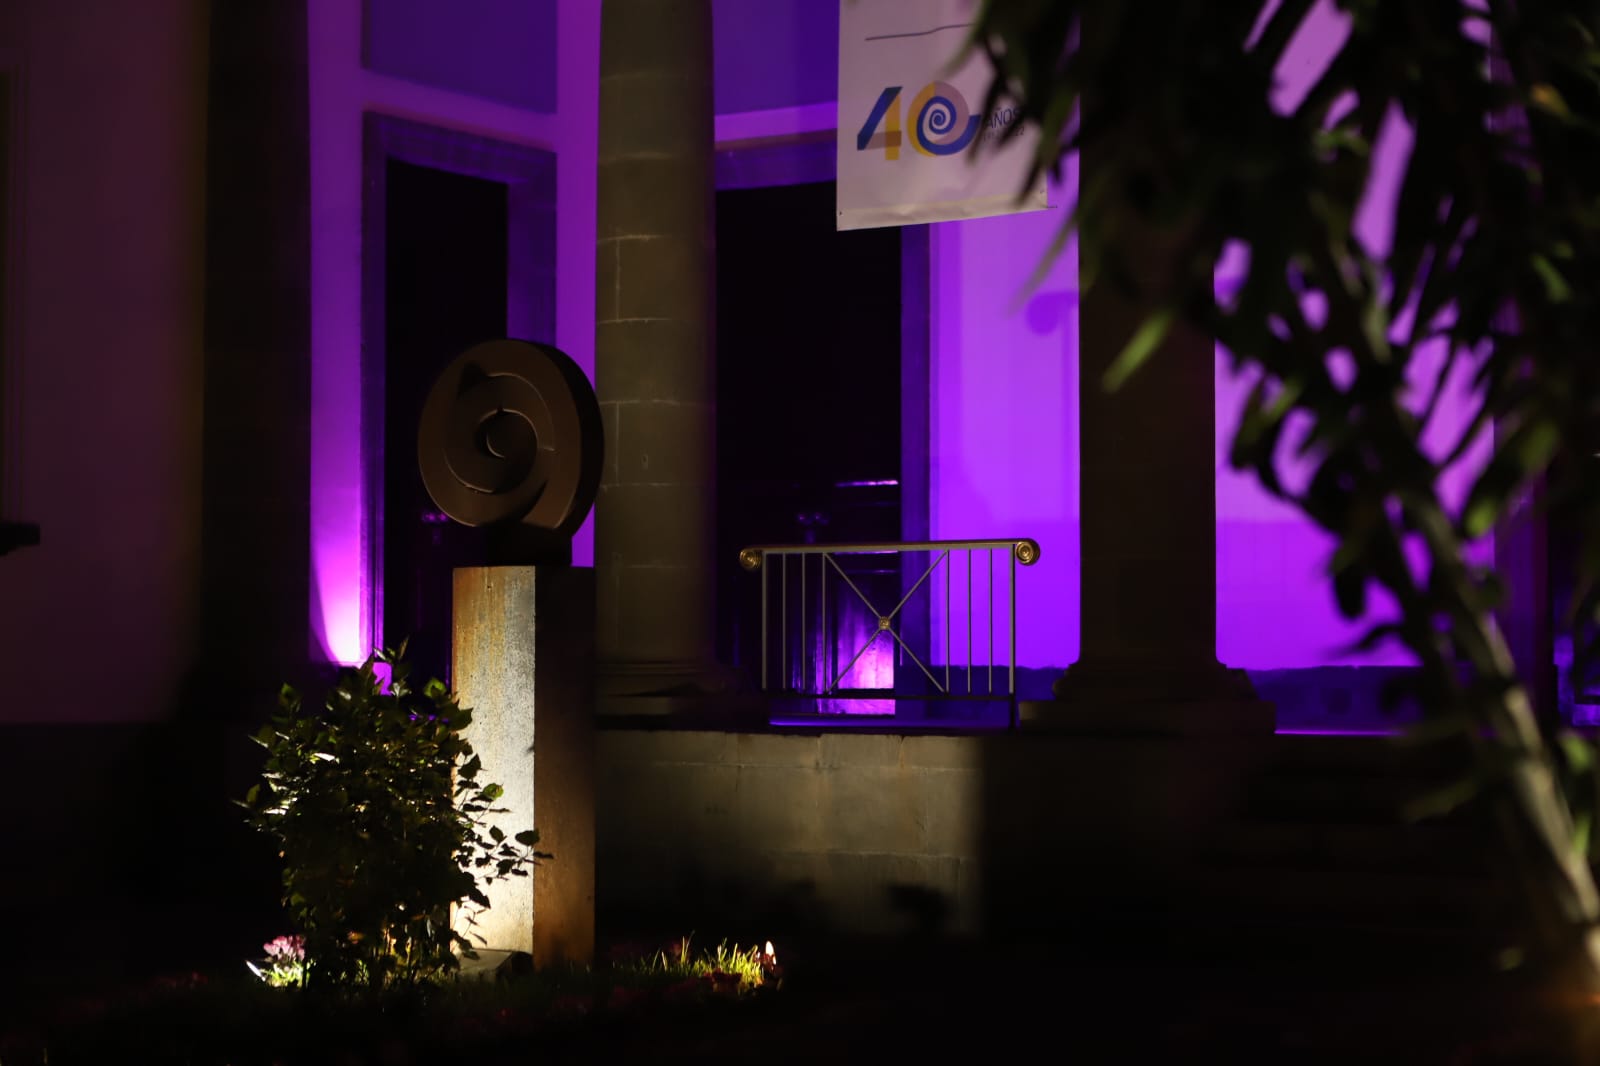 La fachada del Parlamento de Canarias iluminada de color violeta